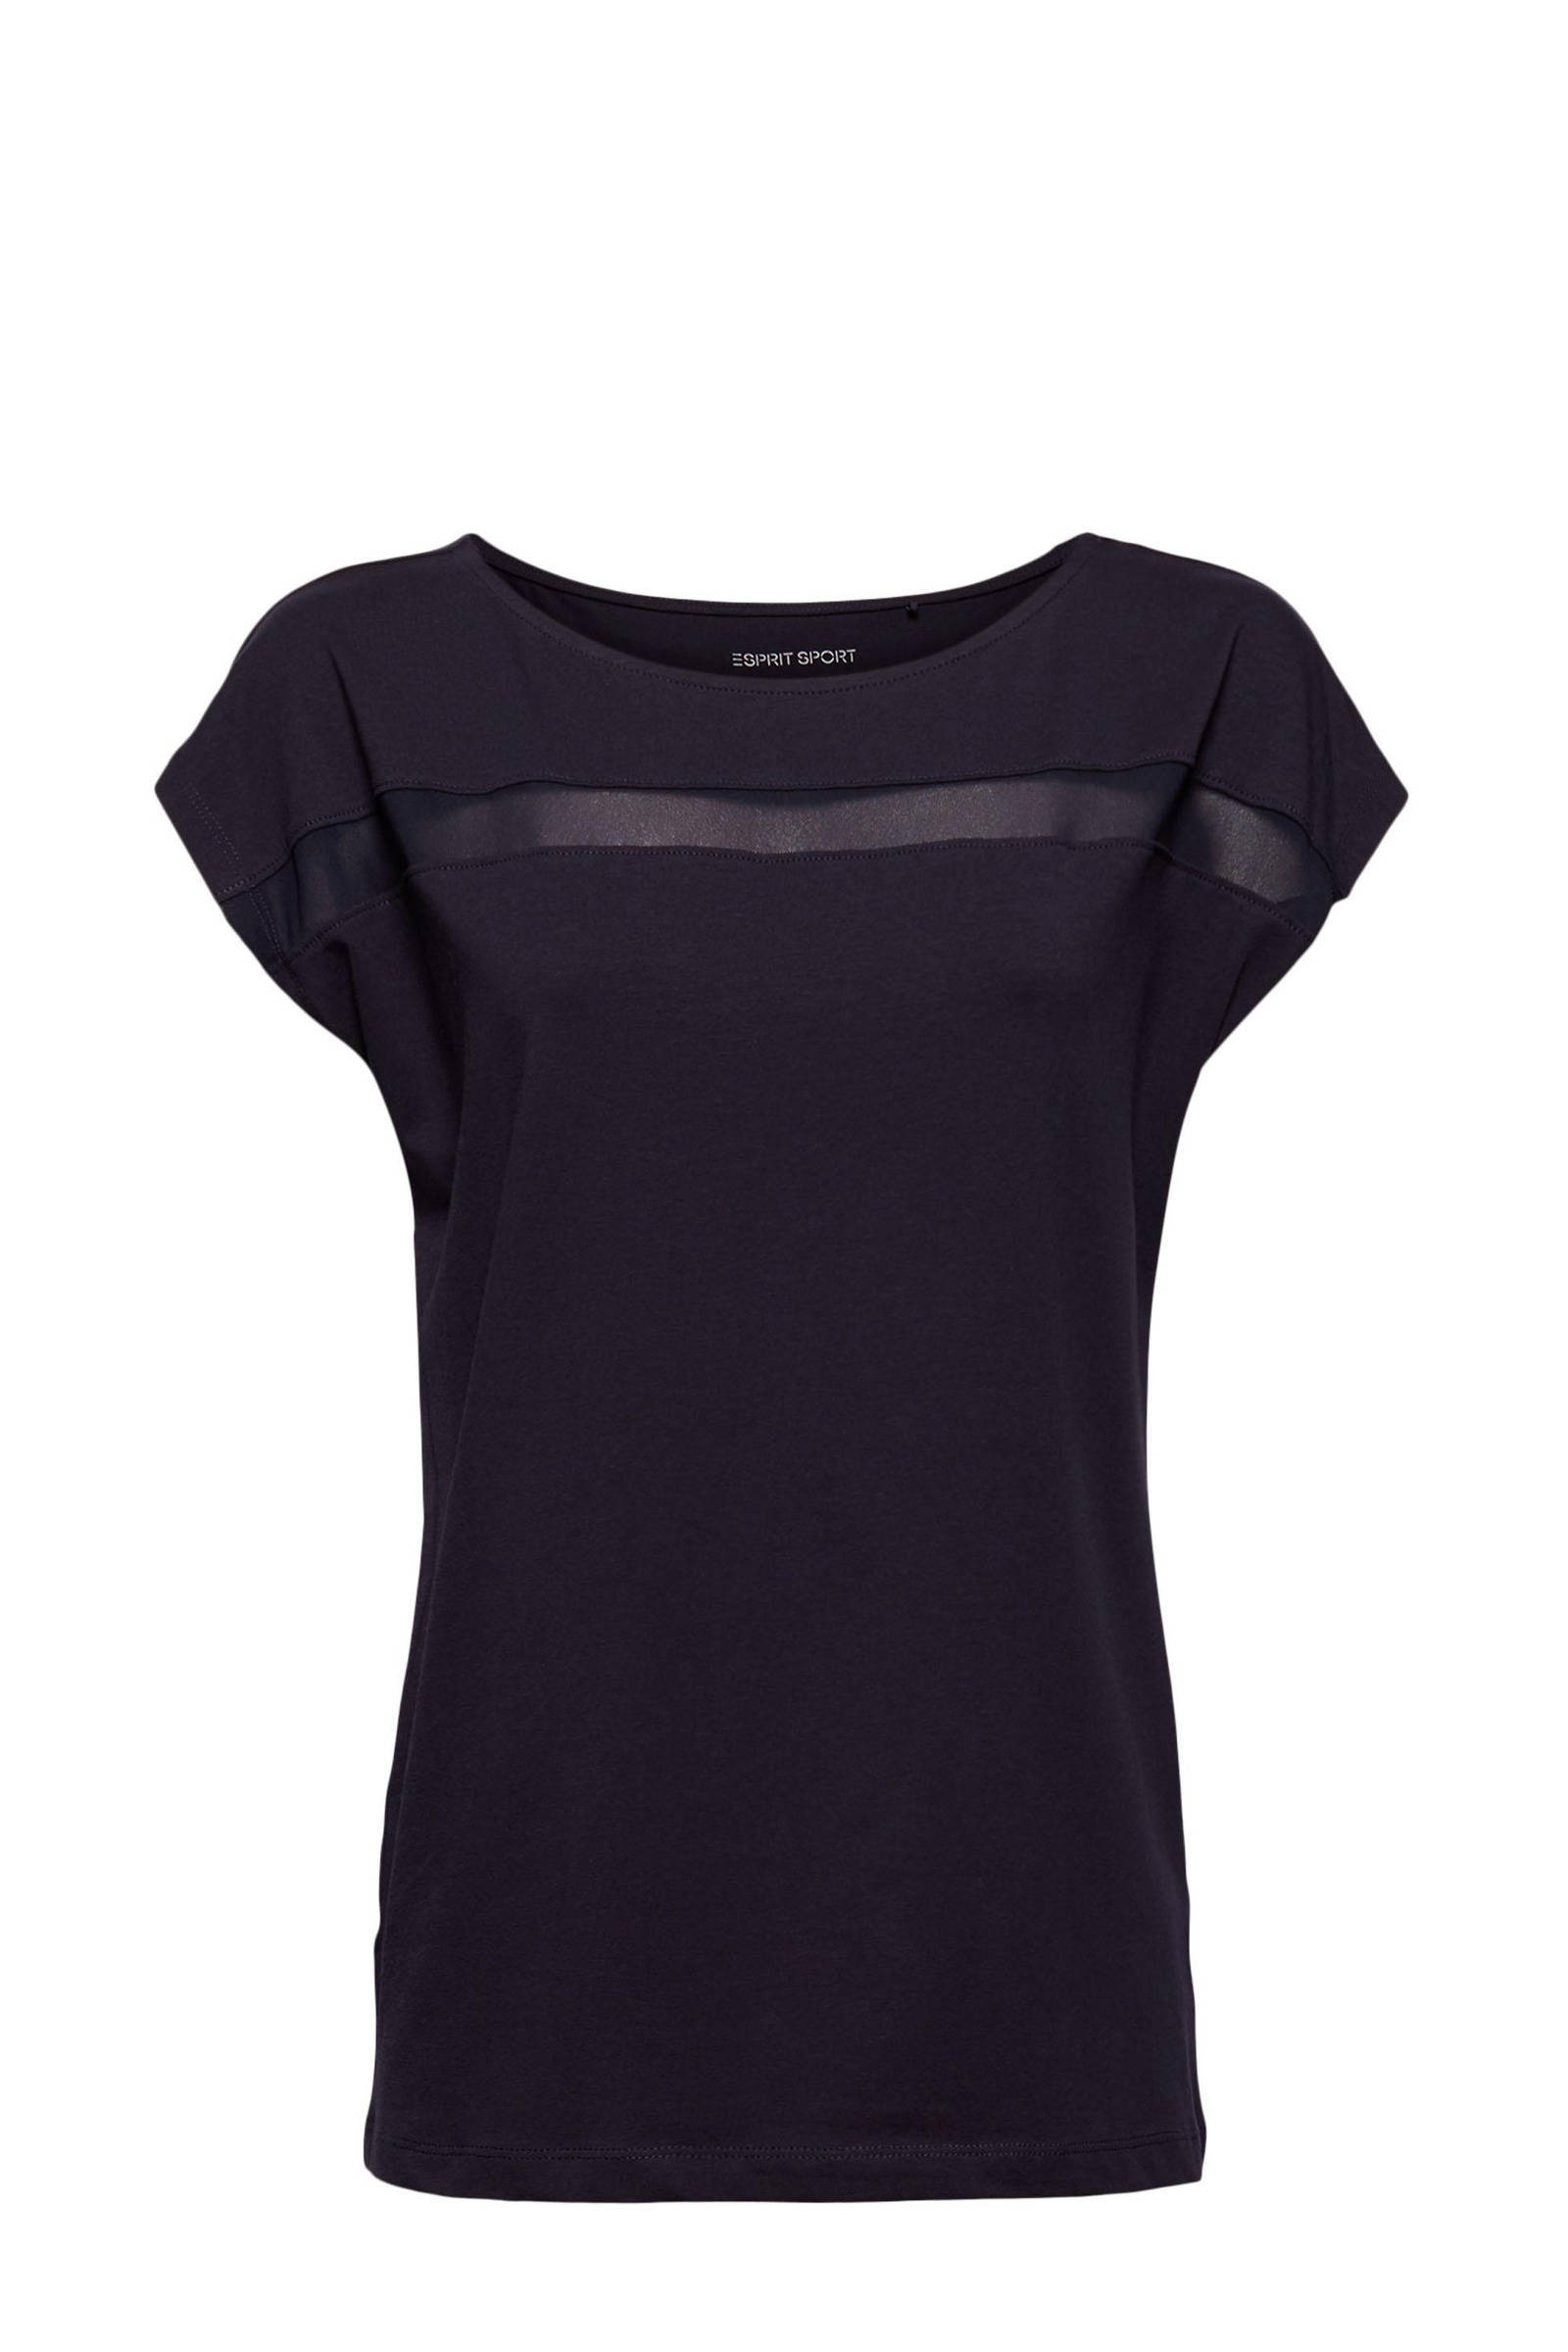 Esprit sports Shirt met korte mouwen met een meshinzet voor op borsthoogte online kopen